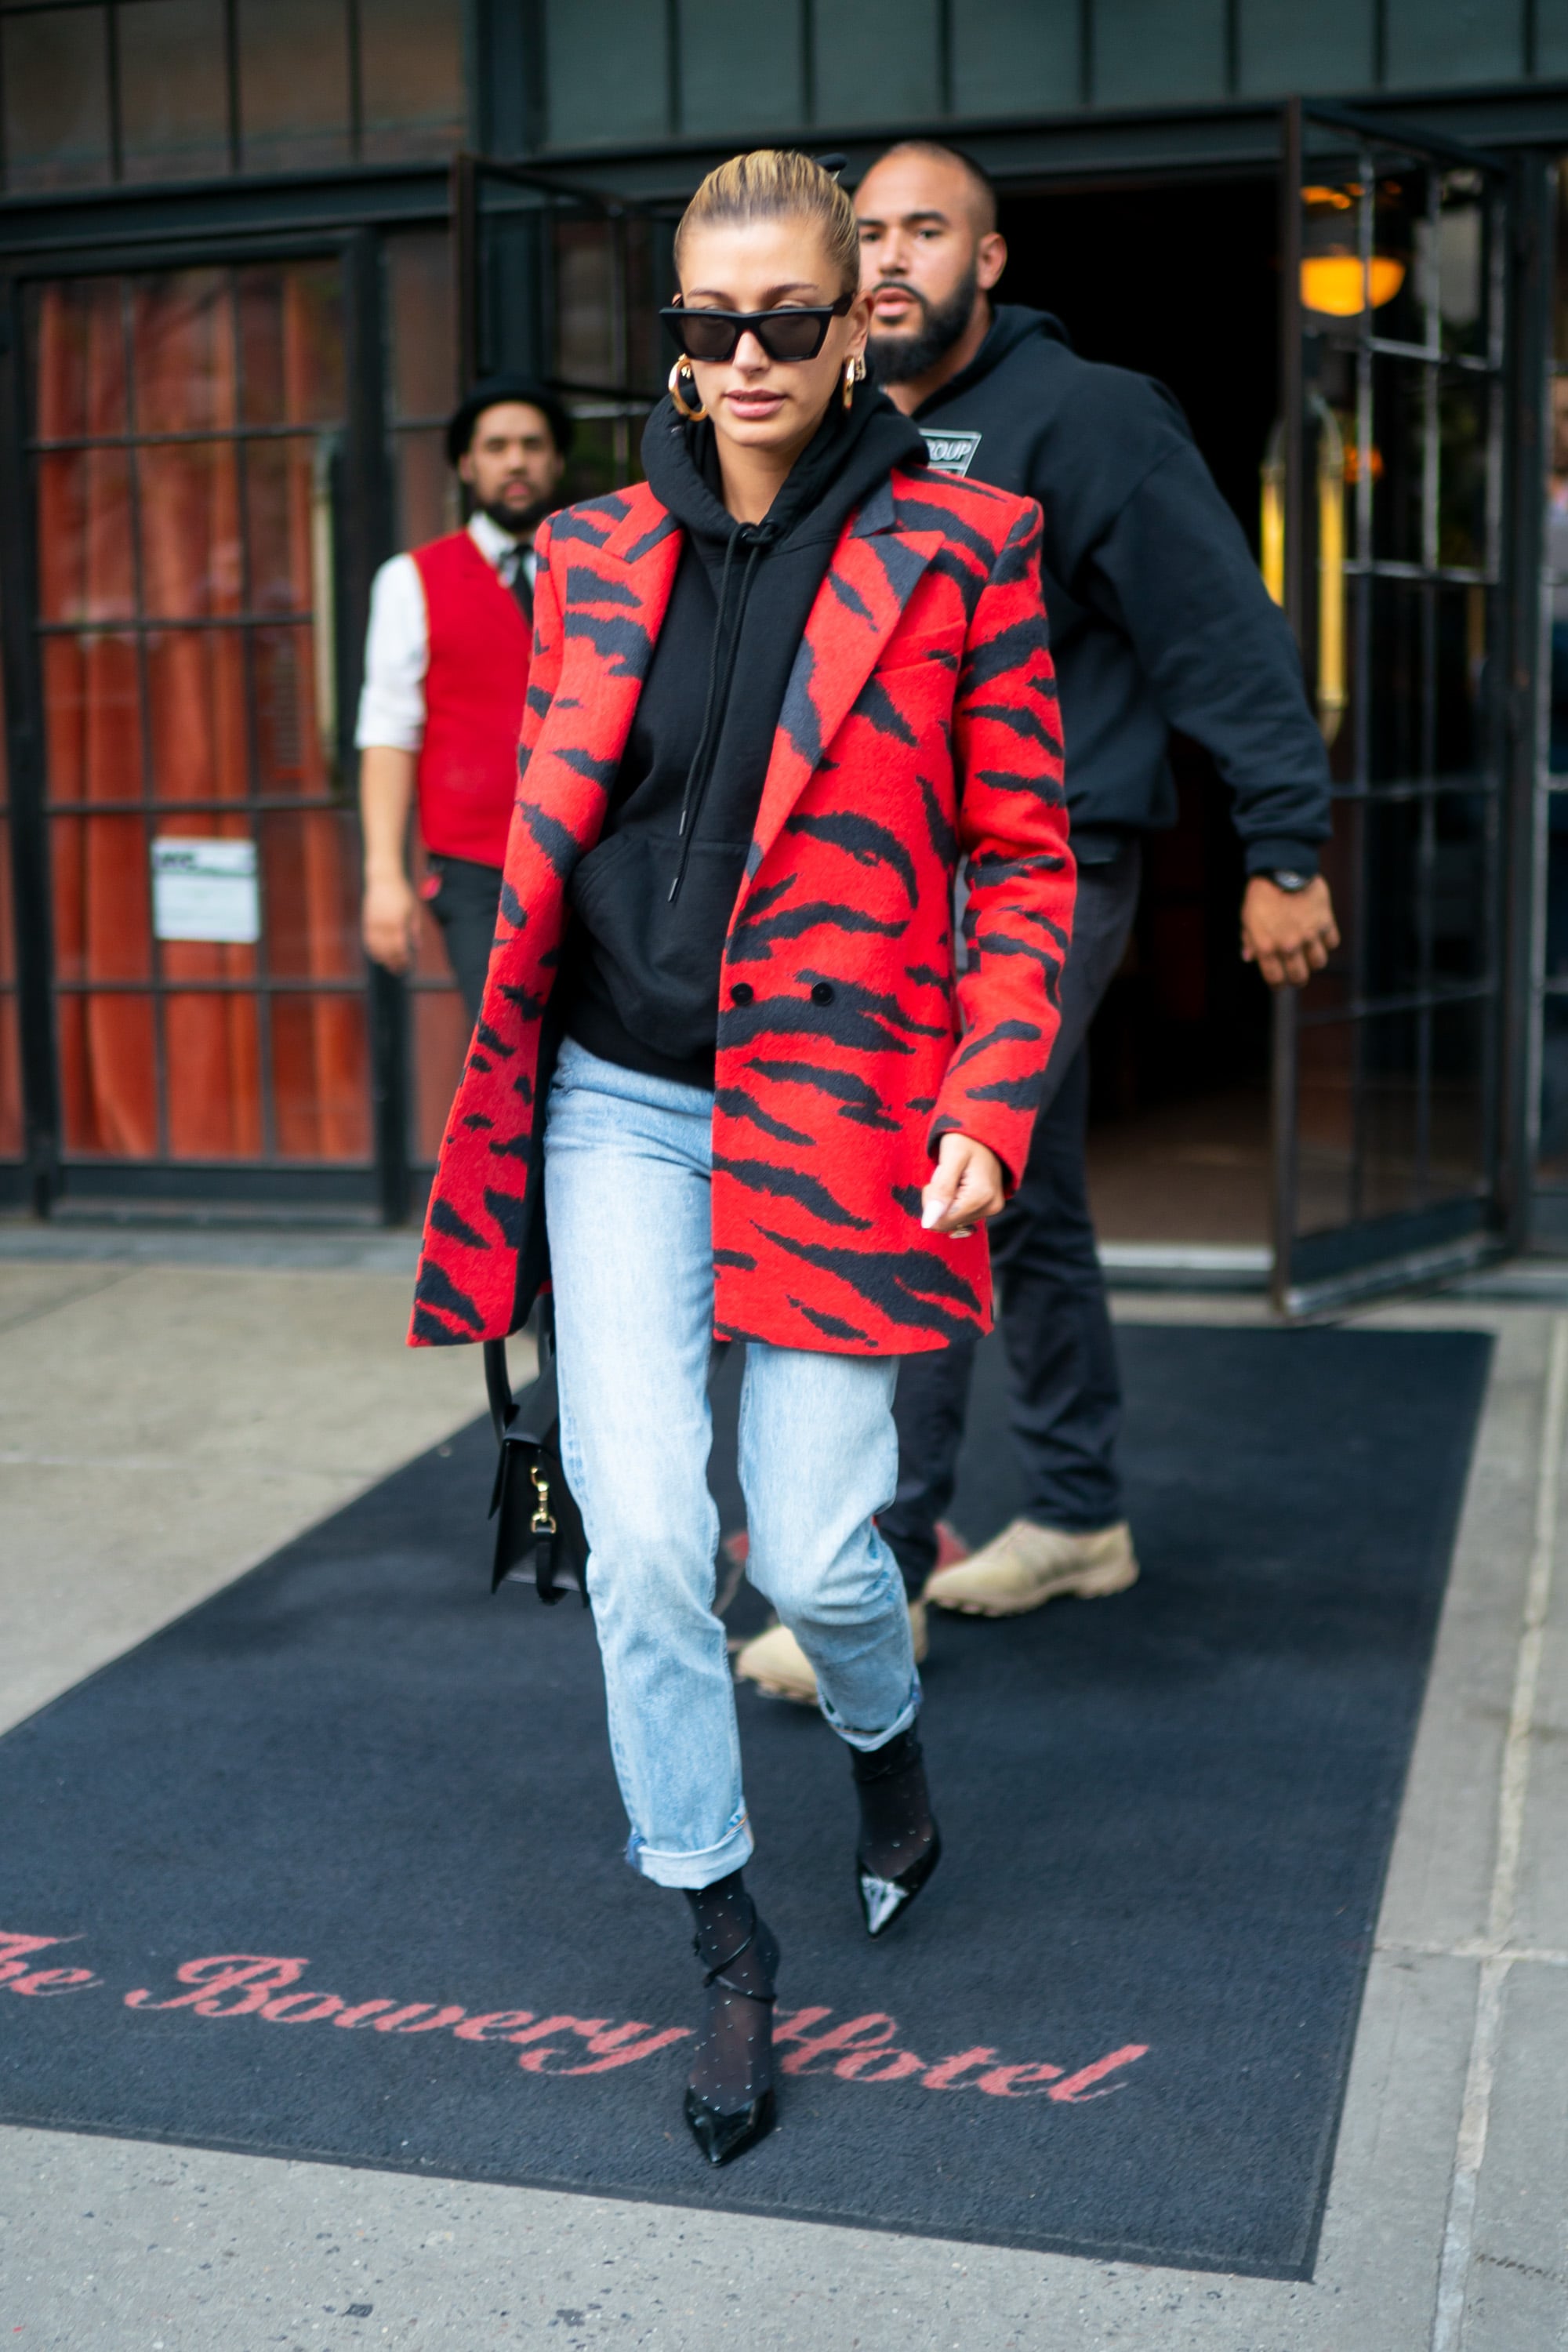 Hailey Baldwin Wears Leopard-Print Sandals With Jeans + Blazer in